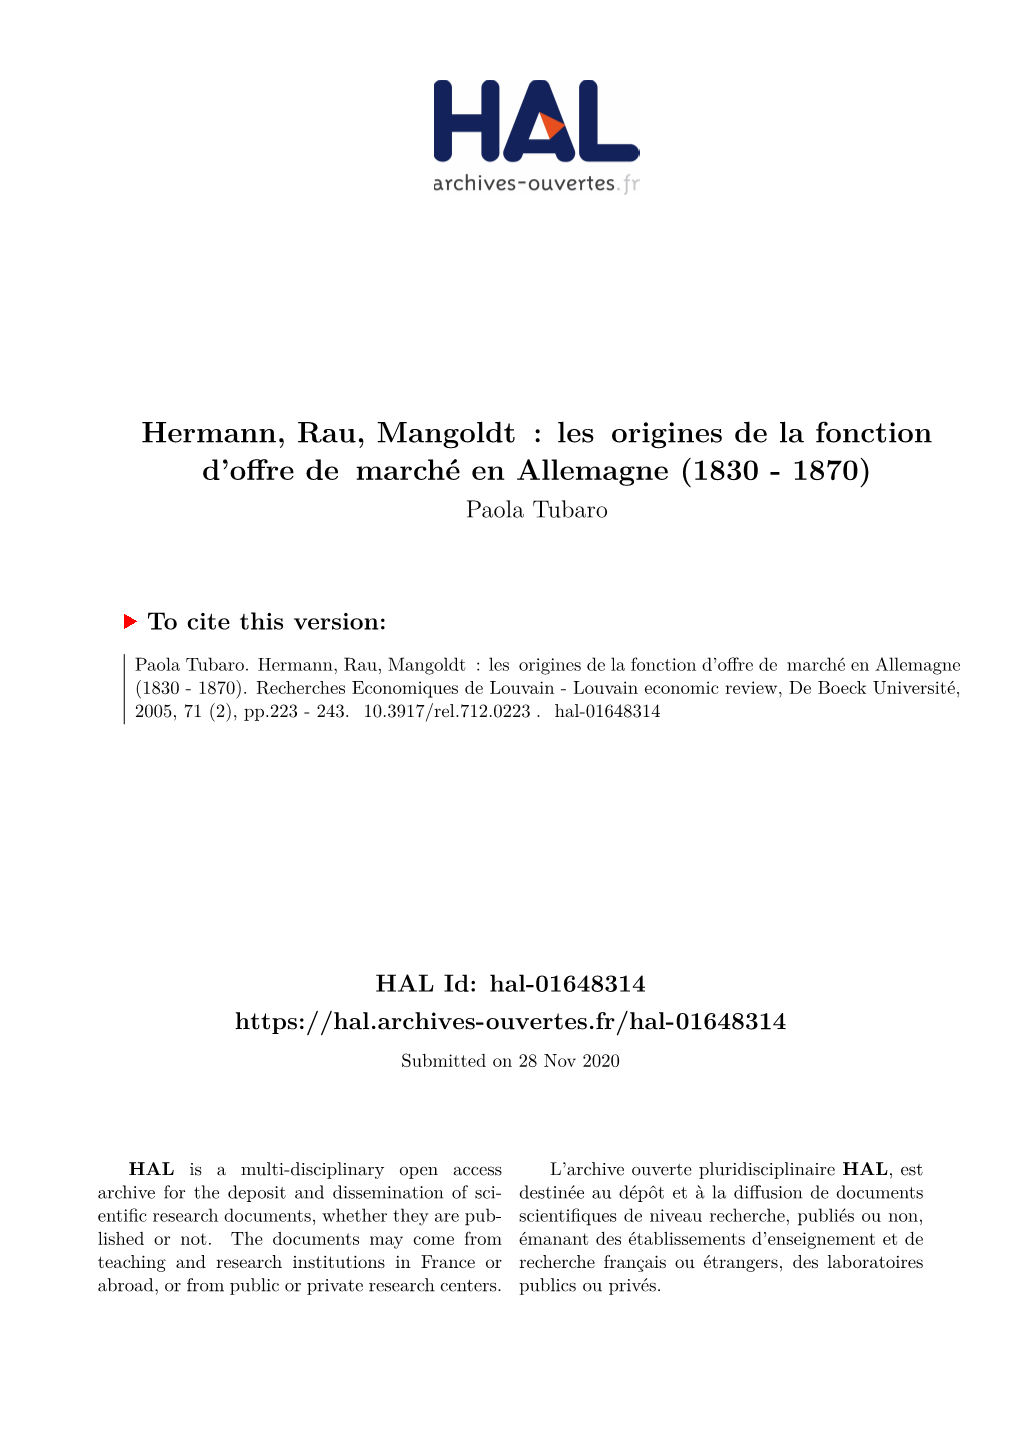 Hermann, Rau, Mangoldt : Les Origines De La Fonction D’Offre De Marché En Allemagne (1830 - 1870) Paola Tubaro